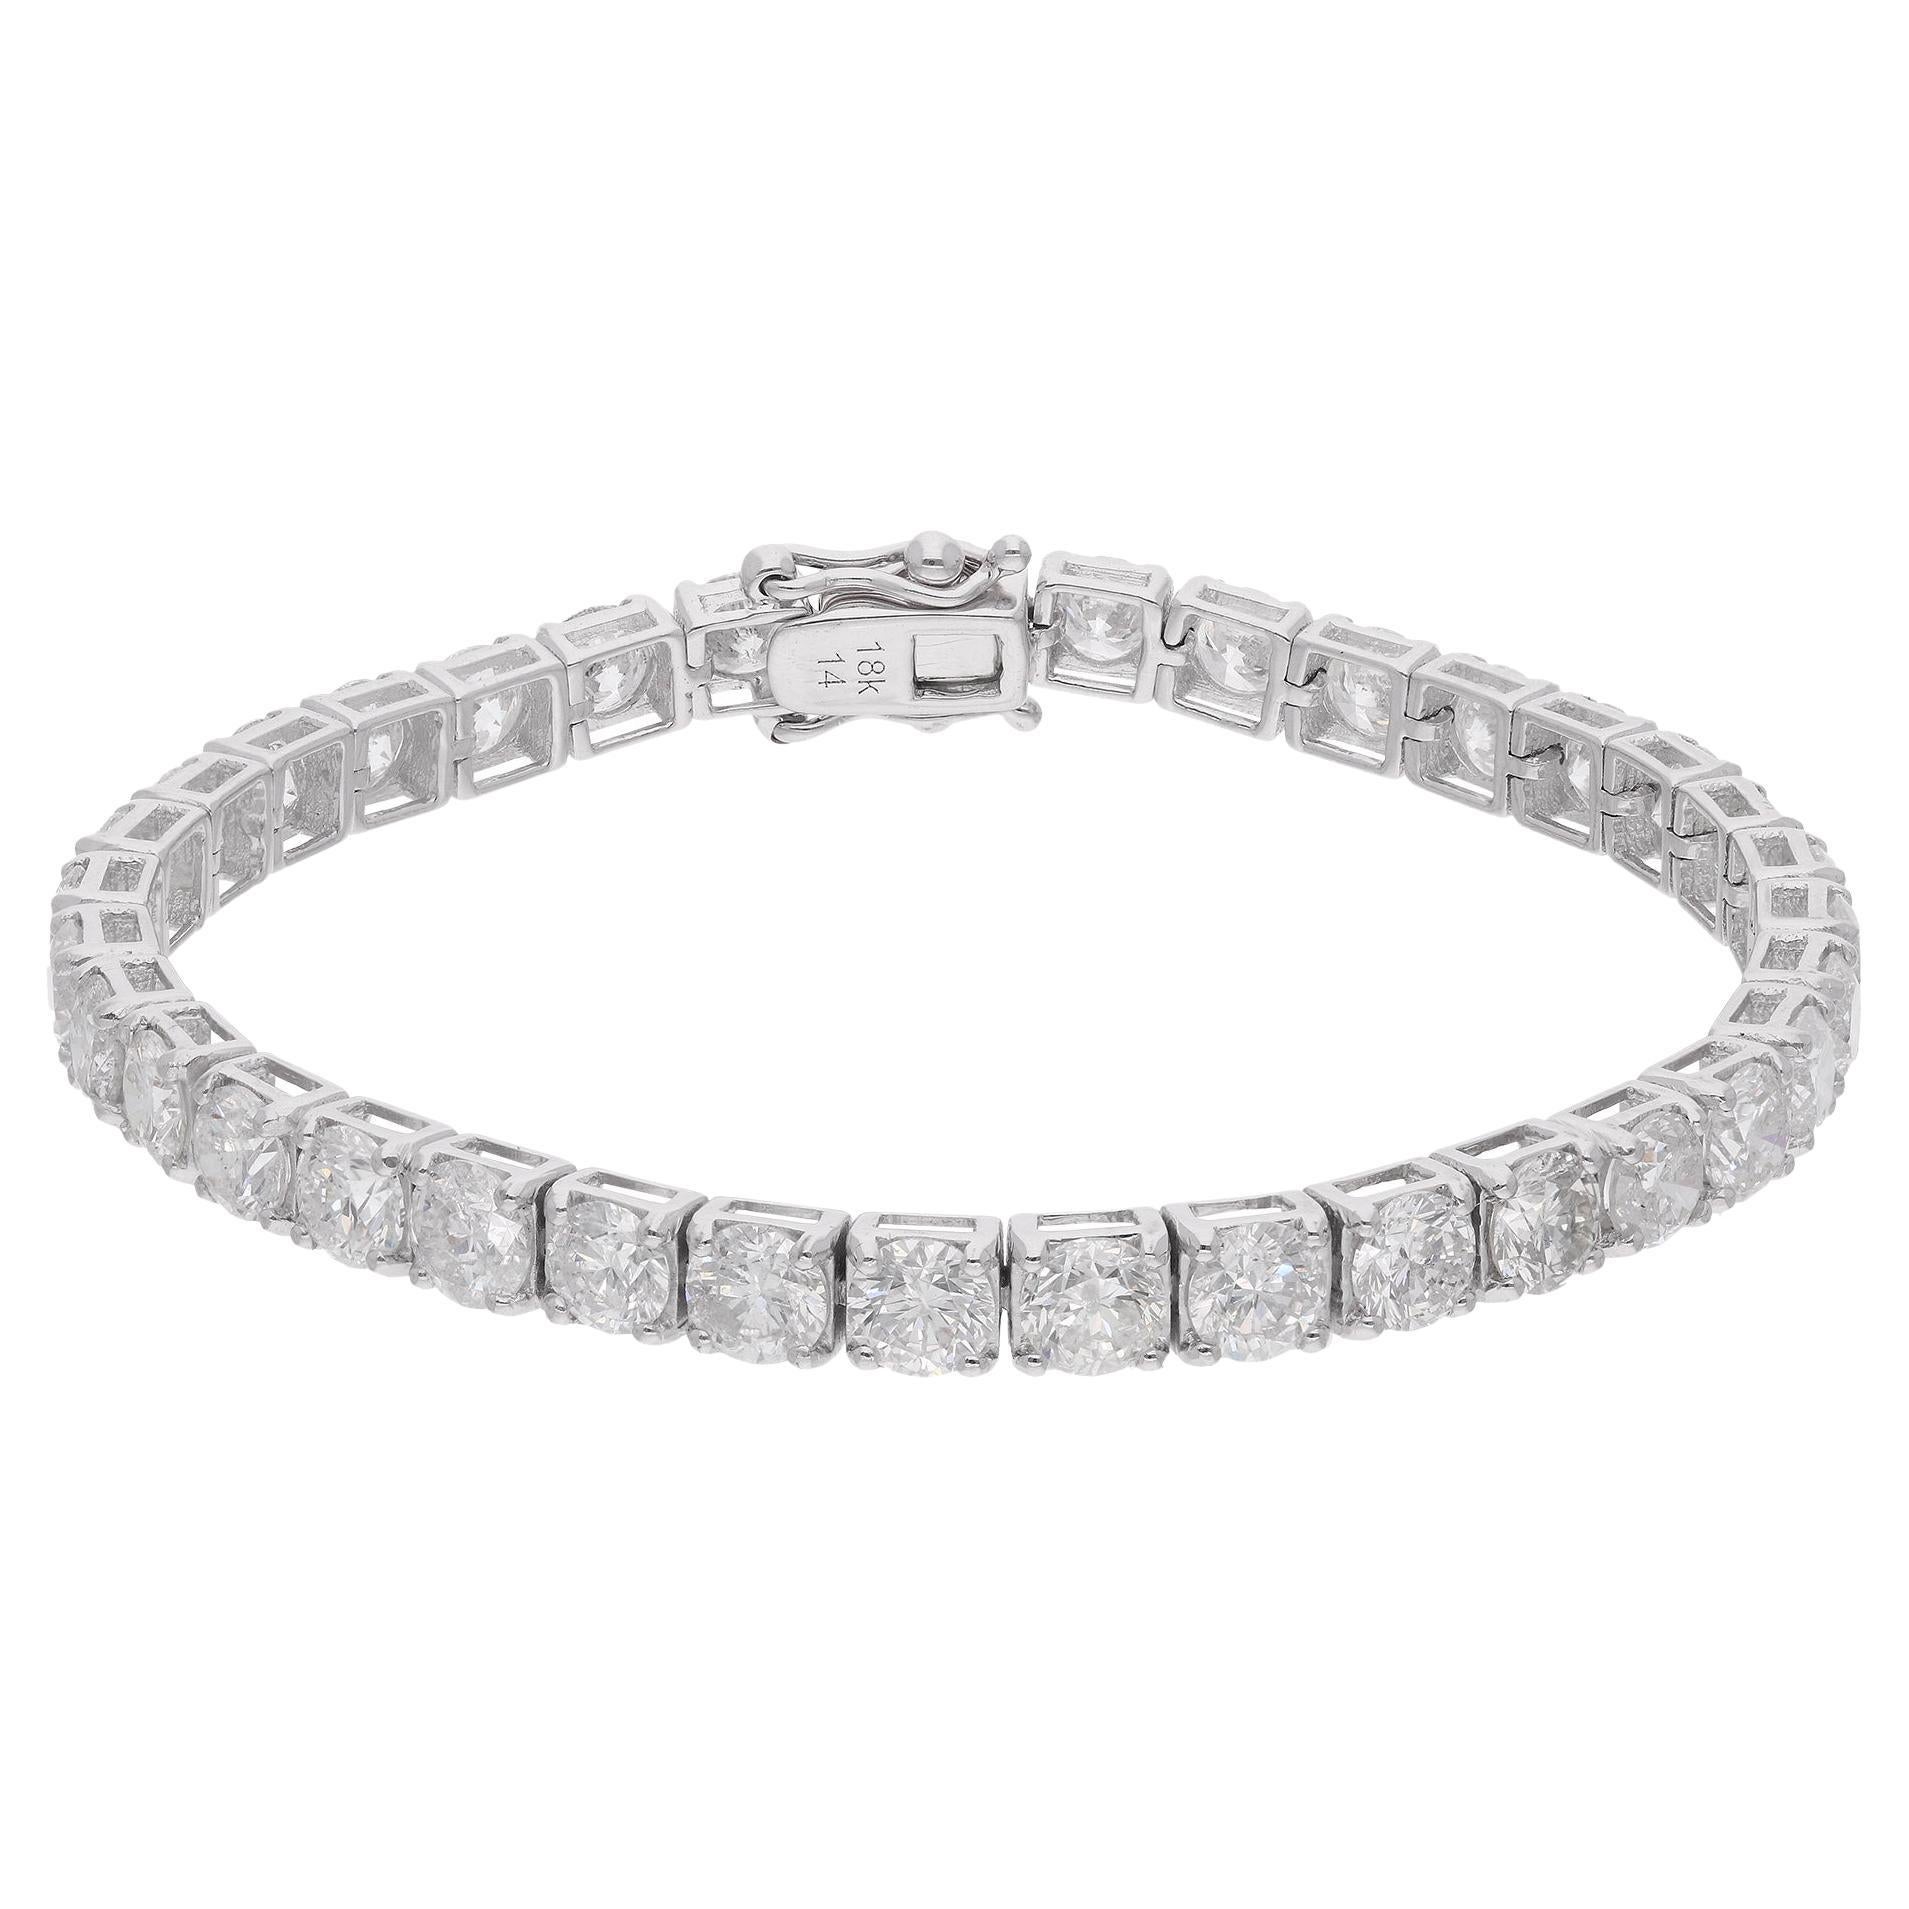 Bracelet tennis en or blanc 18 carats avec diamants ronds de 13,68 carats, fabrication artisanale